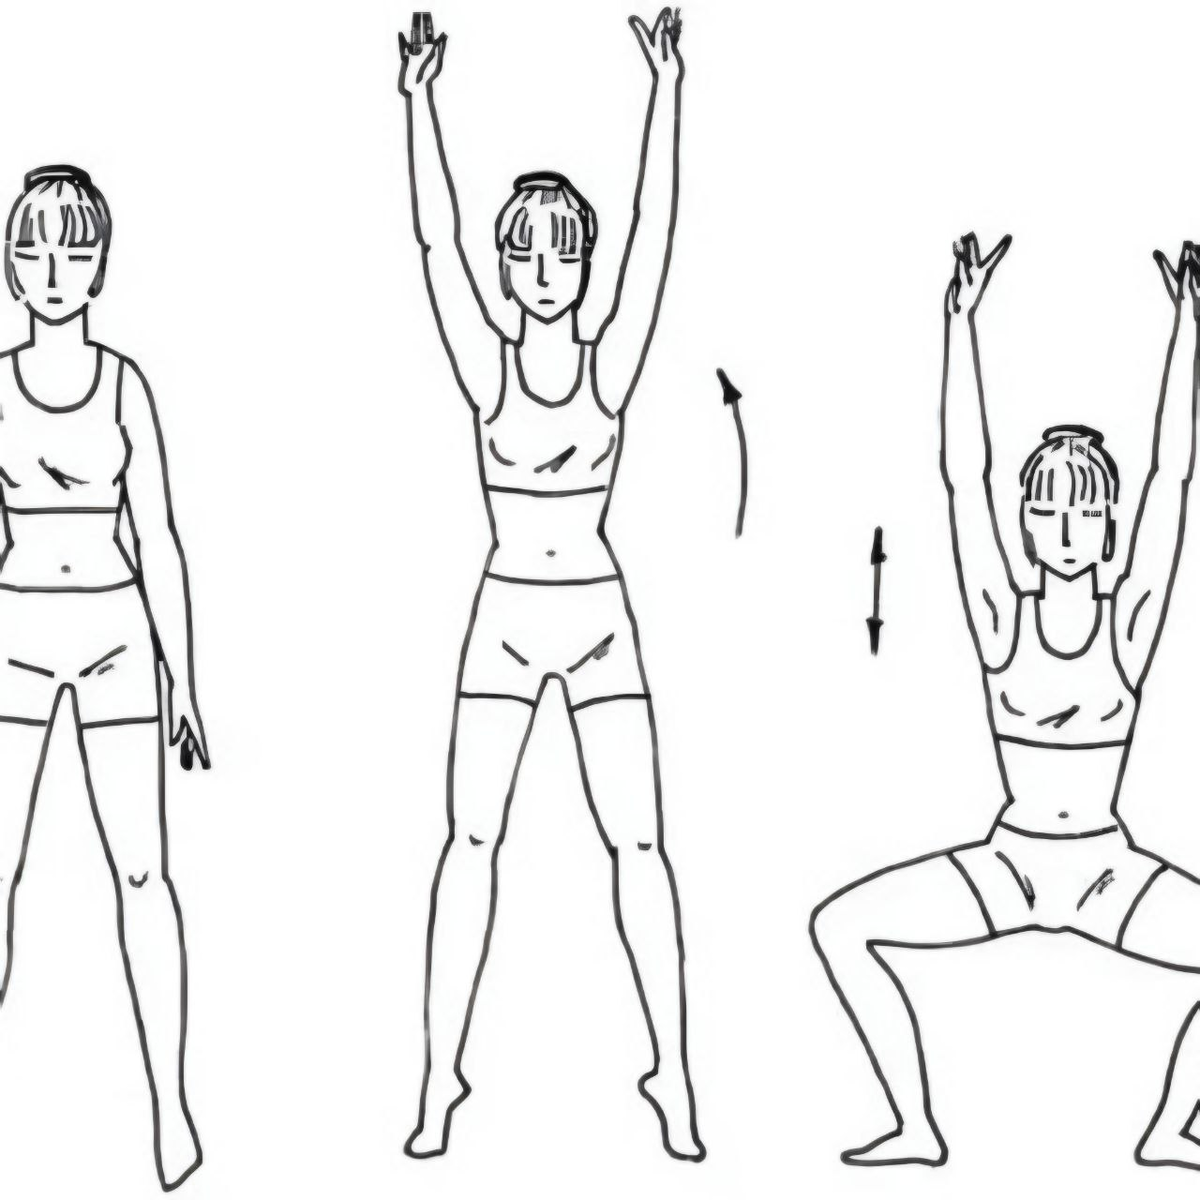 Упражнения стоя. Упражнение поднятие рук в стороны. Ноги на ширине плеч руки вдоль туловища. Упражнения для туловища и ног. Подняться на цыпочки